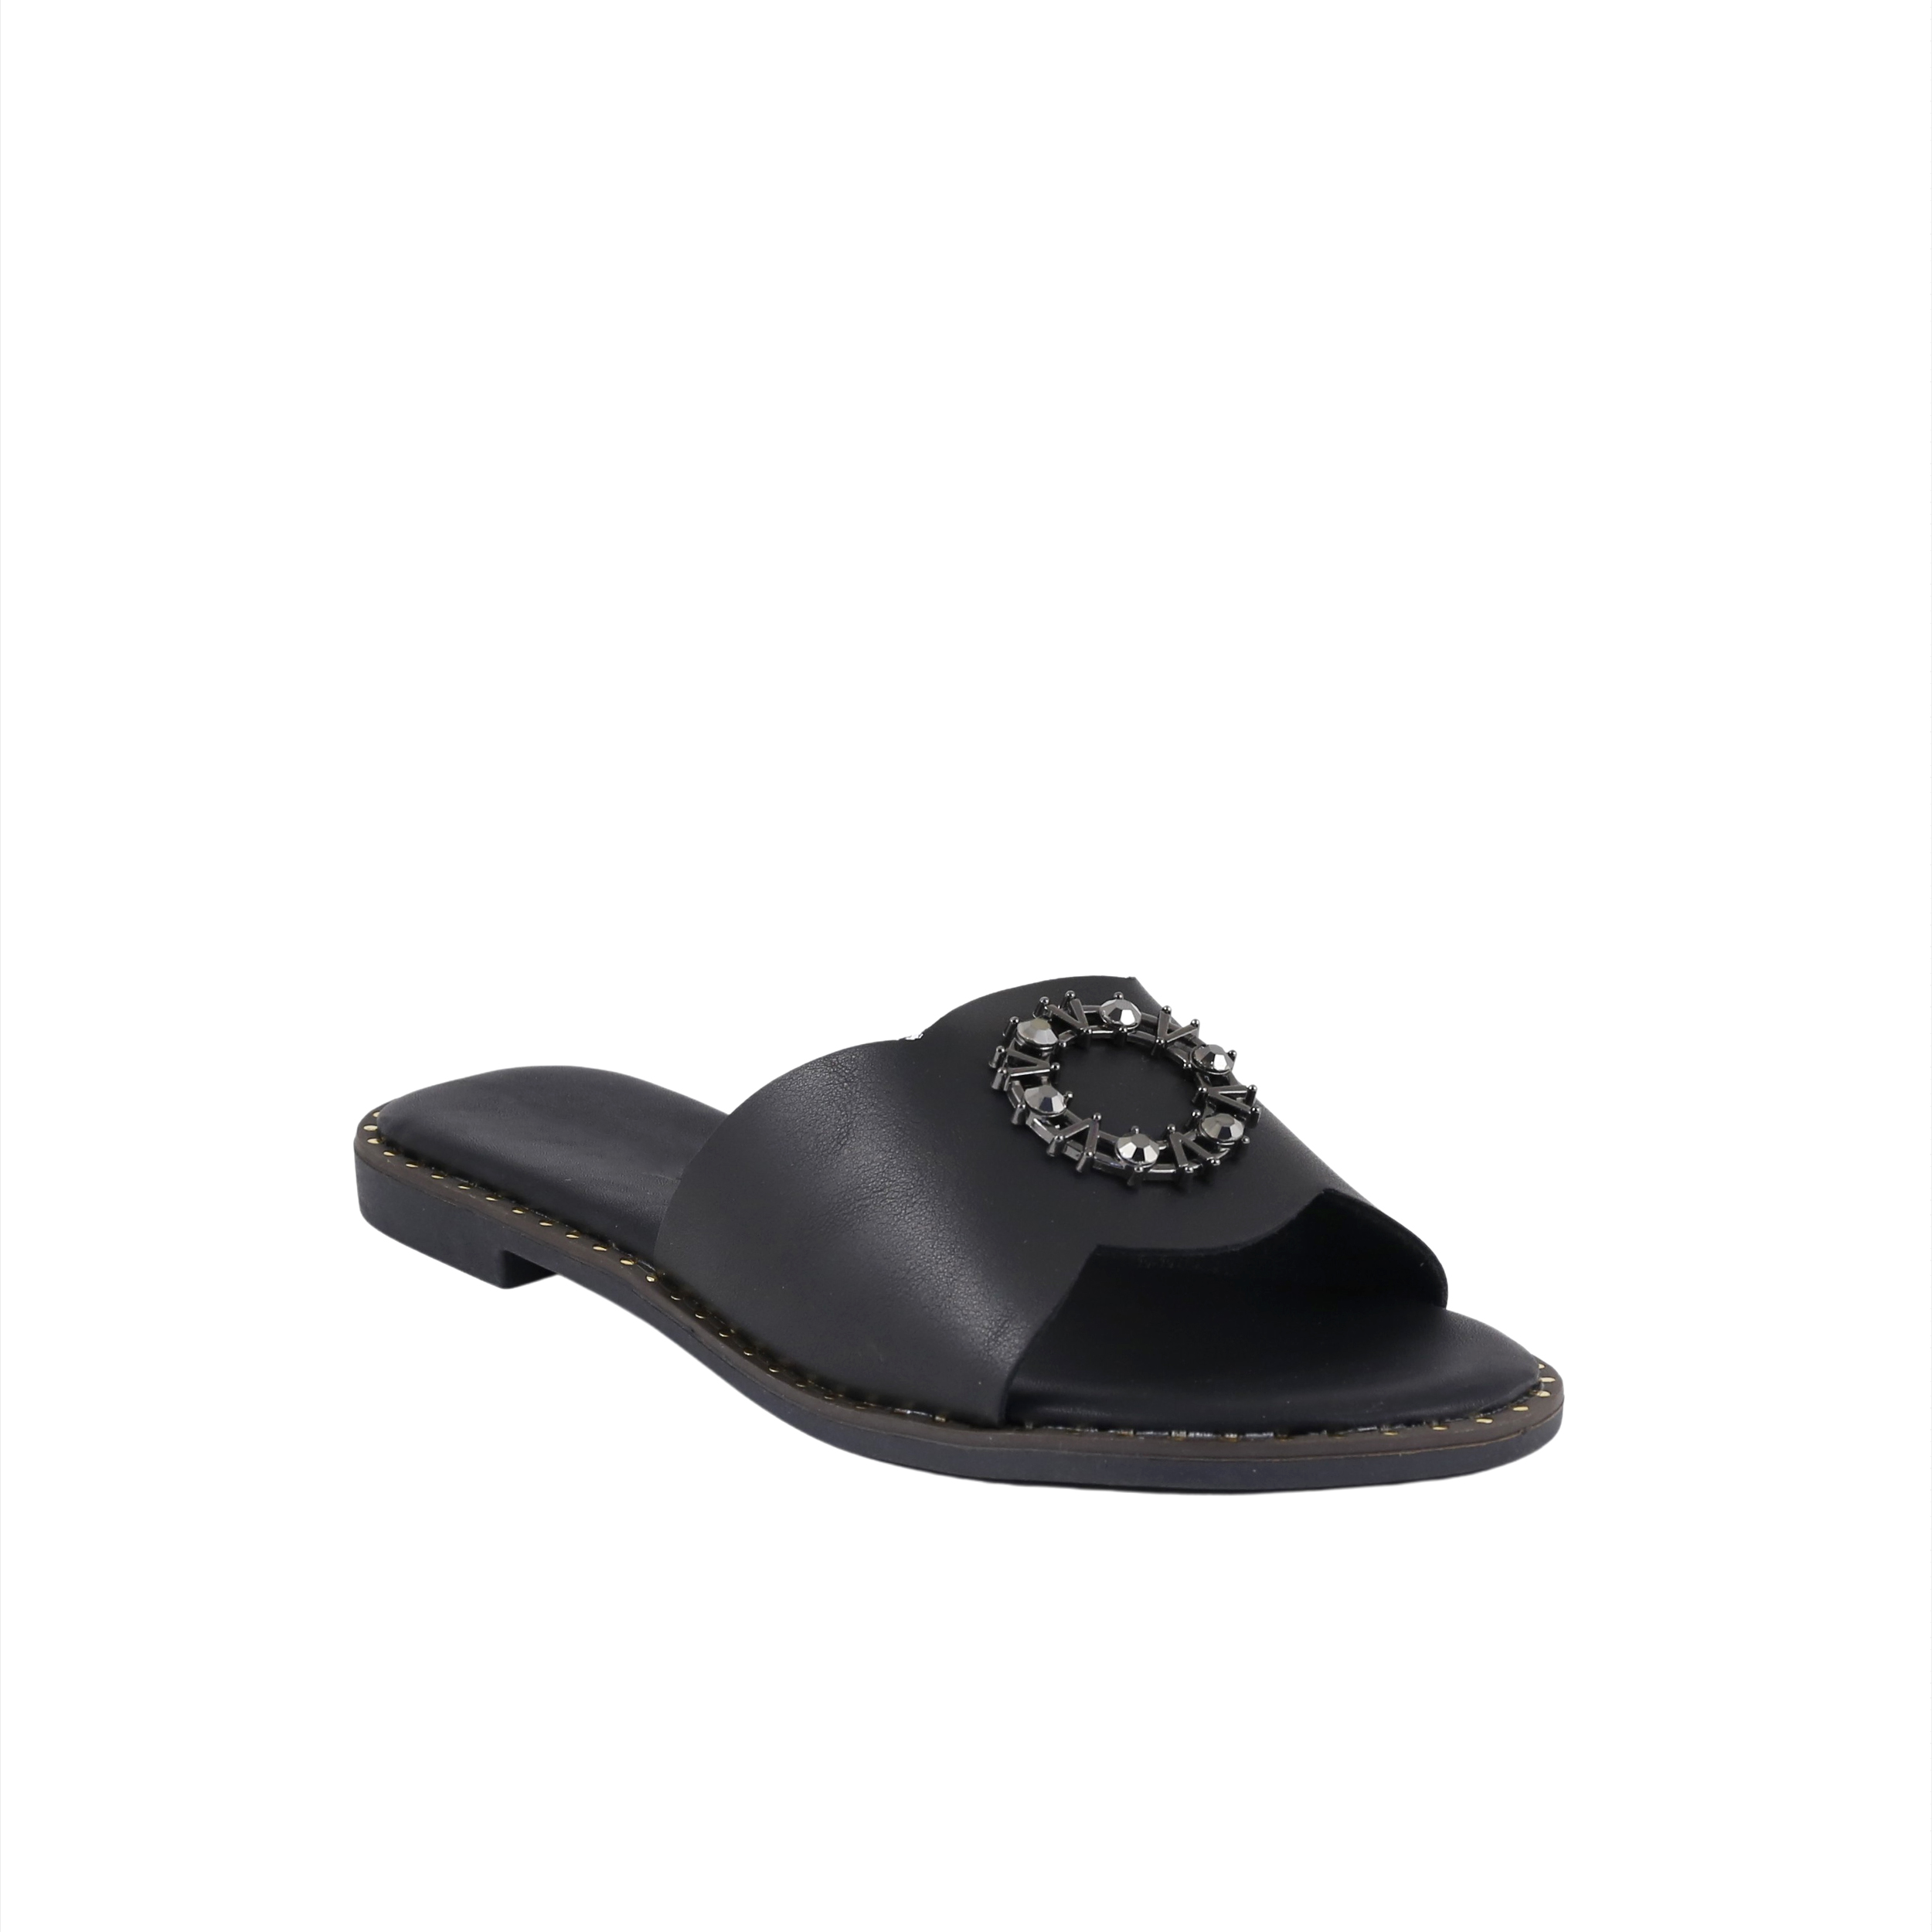 Woman Shoes Sandals - Flip Flops Black flip flop O